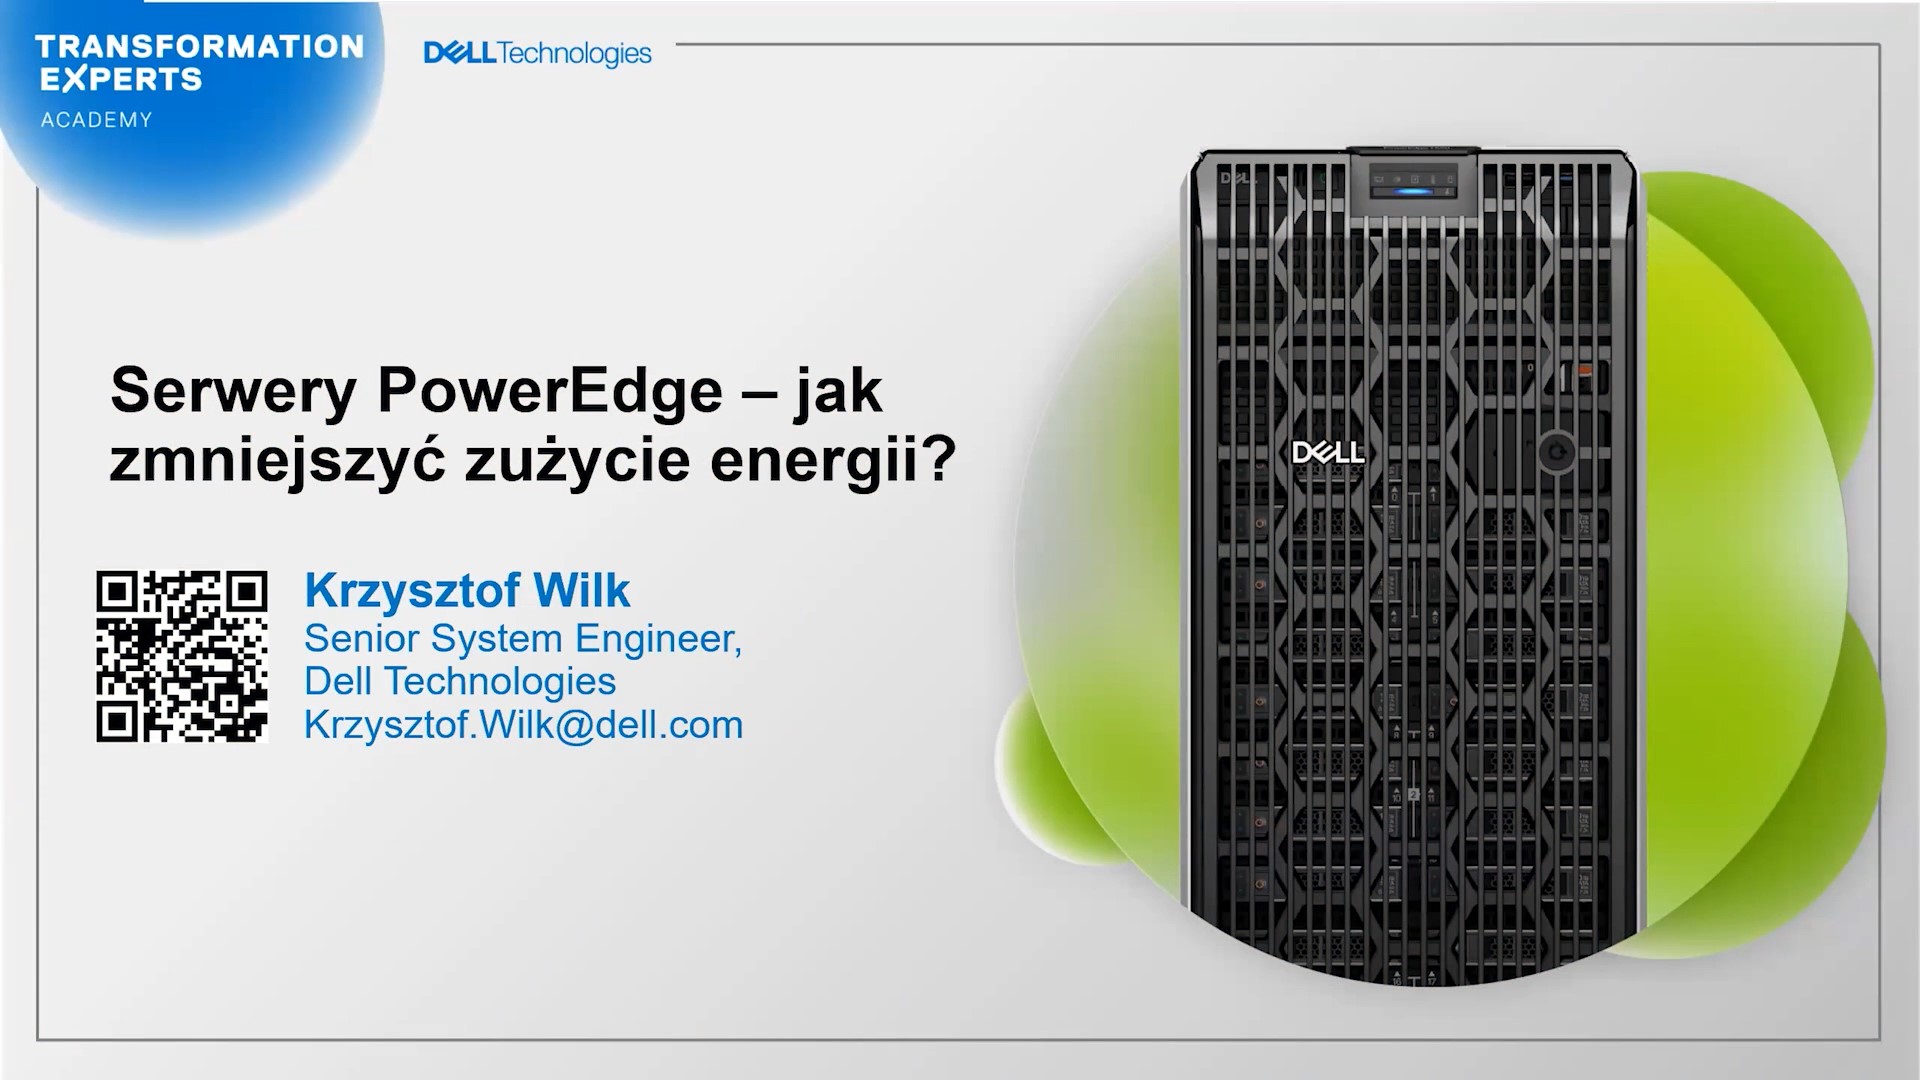 Serwery PowerEdge – jak zmniejszyć zużycie energii?